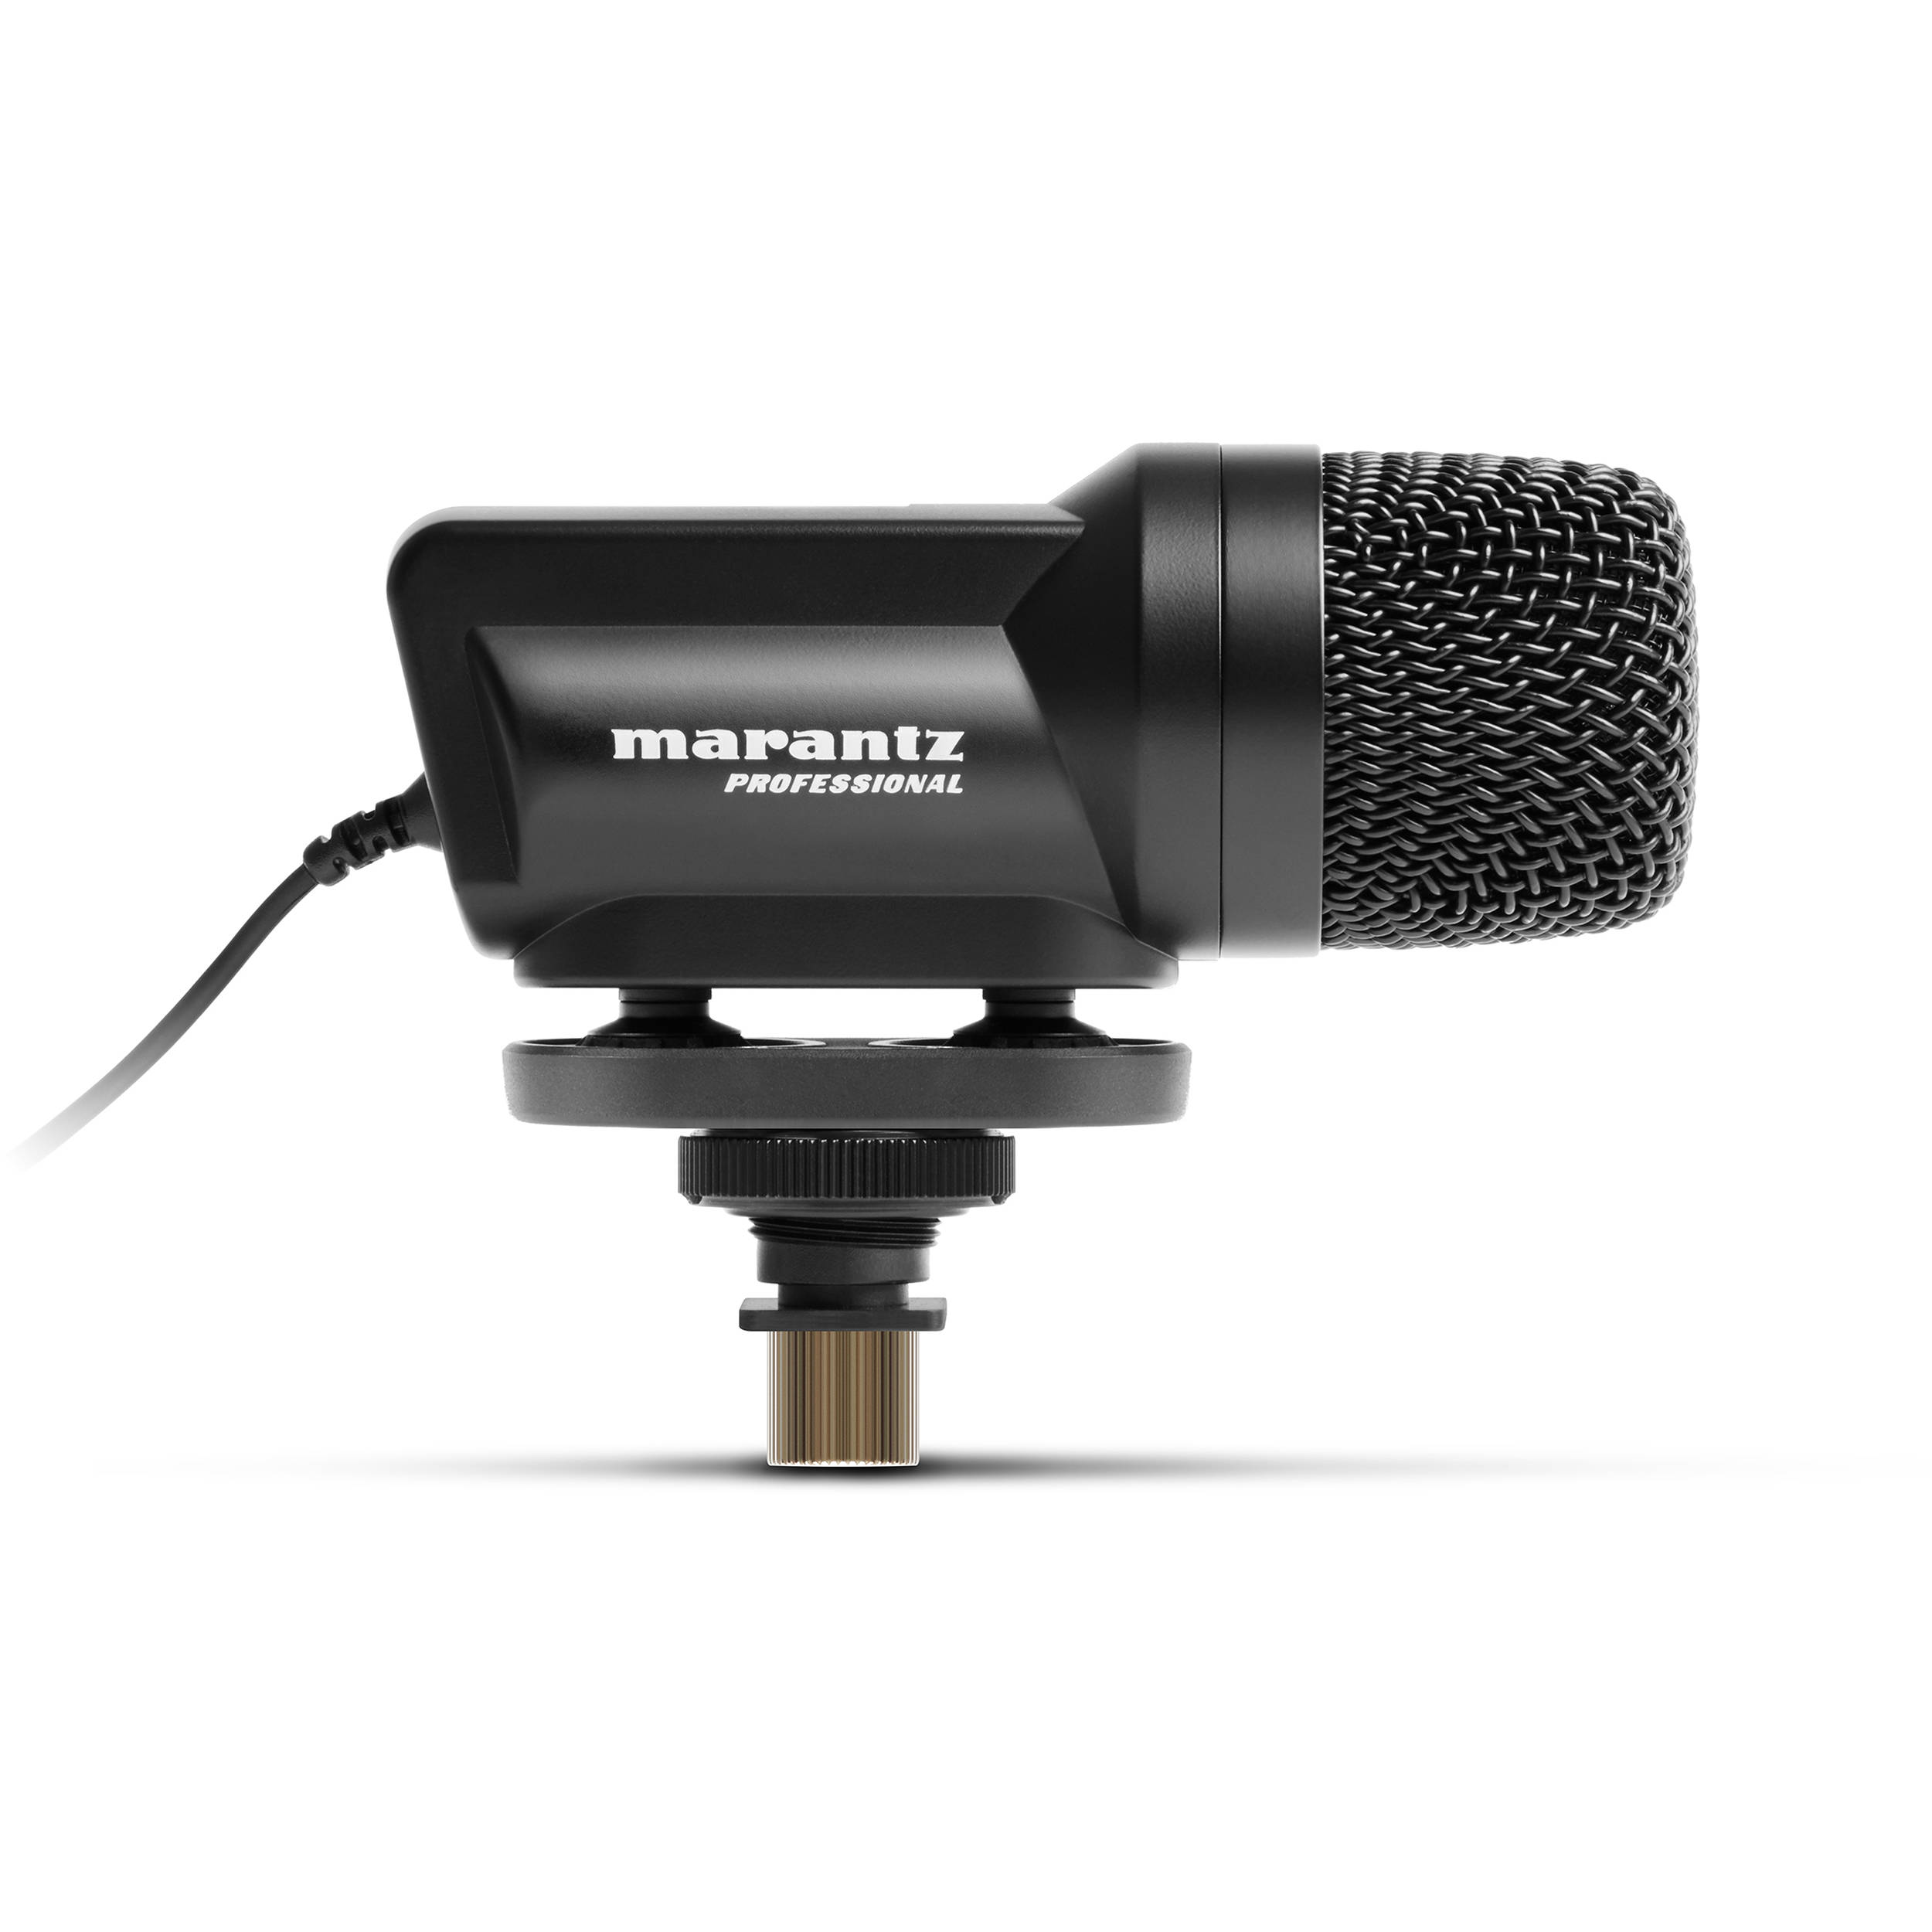 Marantz Professional Audio Scope SB-C2 X / Y Microphone condenseur stéréo pour les caméras DSLR (50 Hz - 18 kHz)